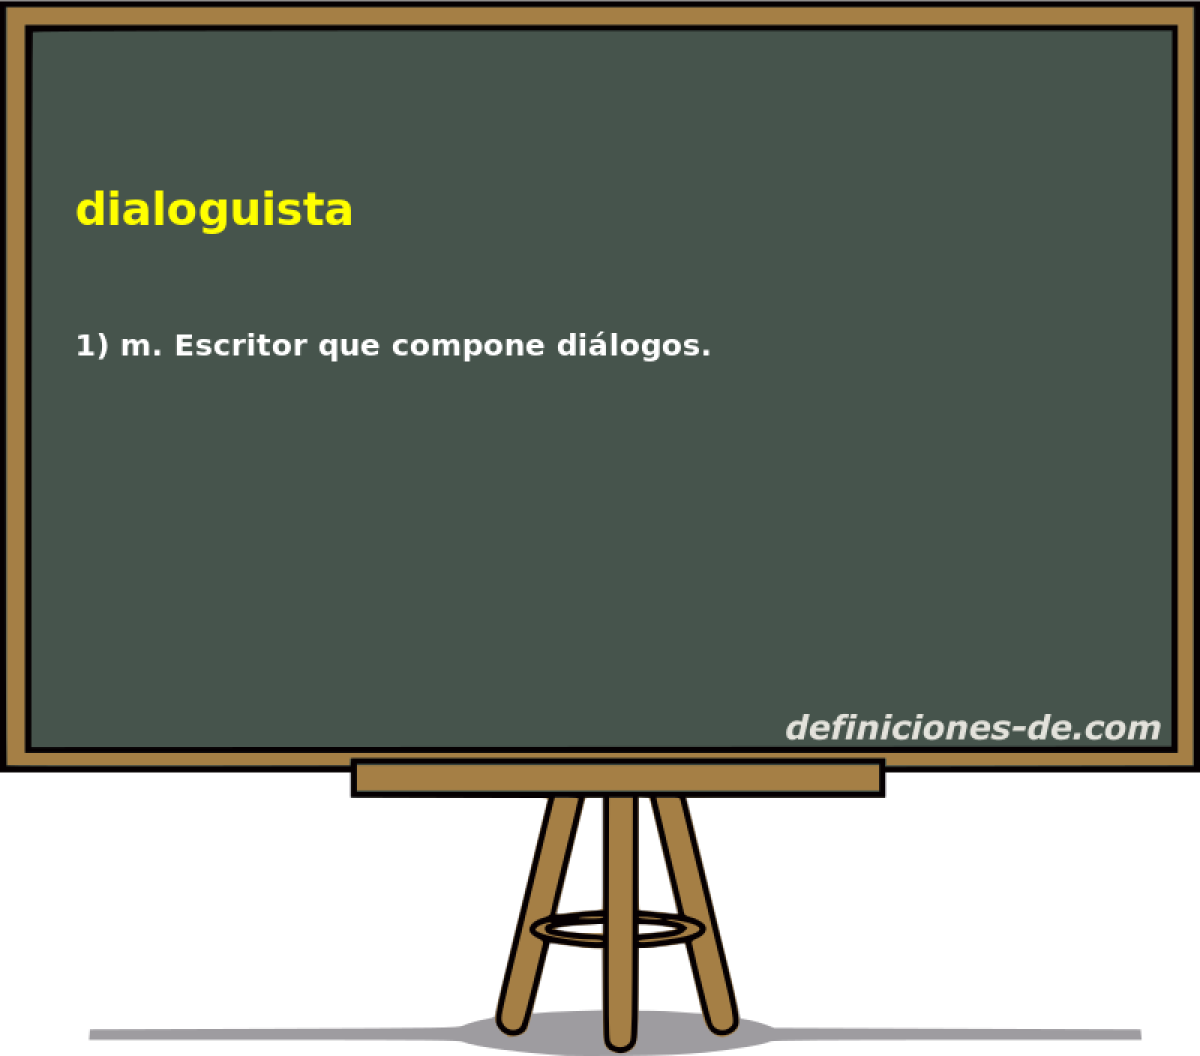 dialoguista 